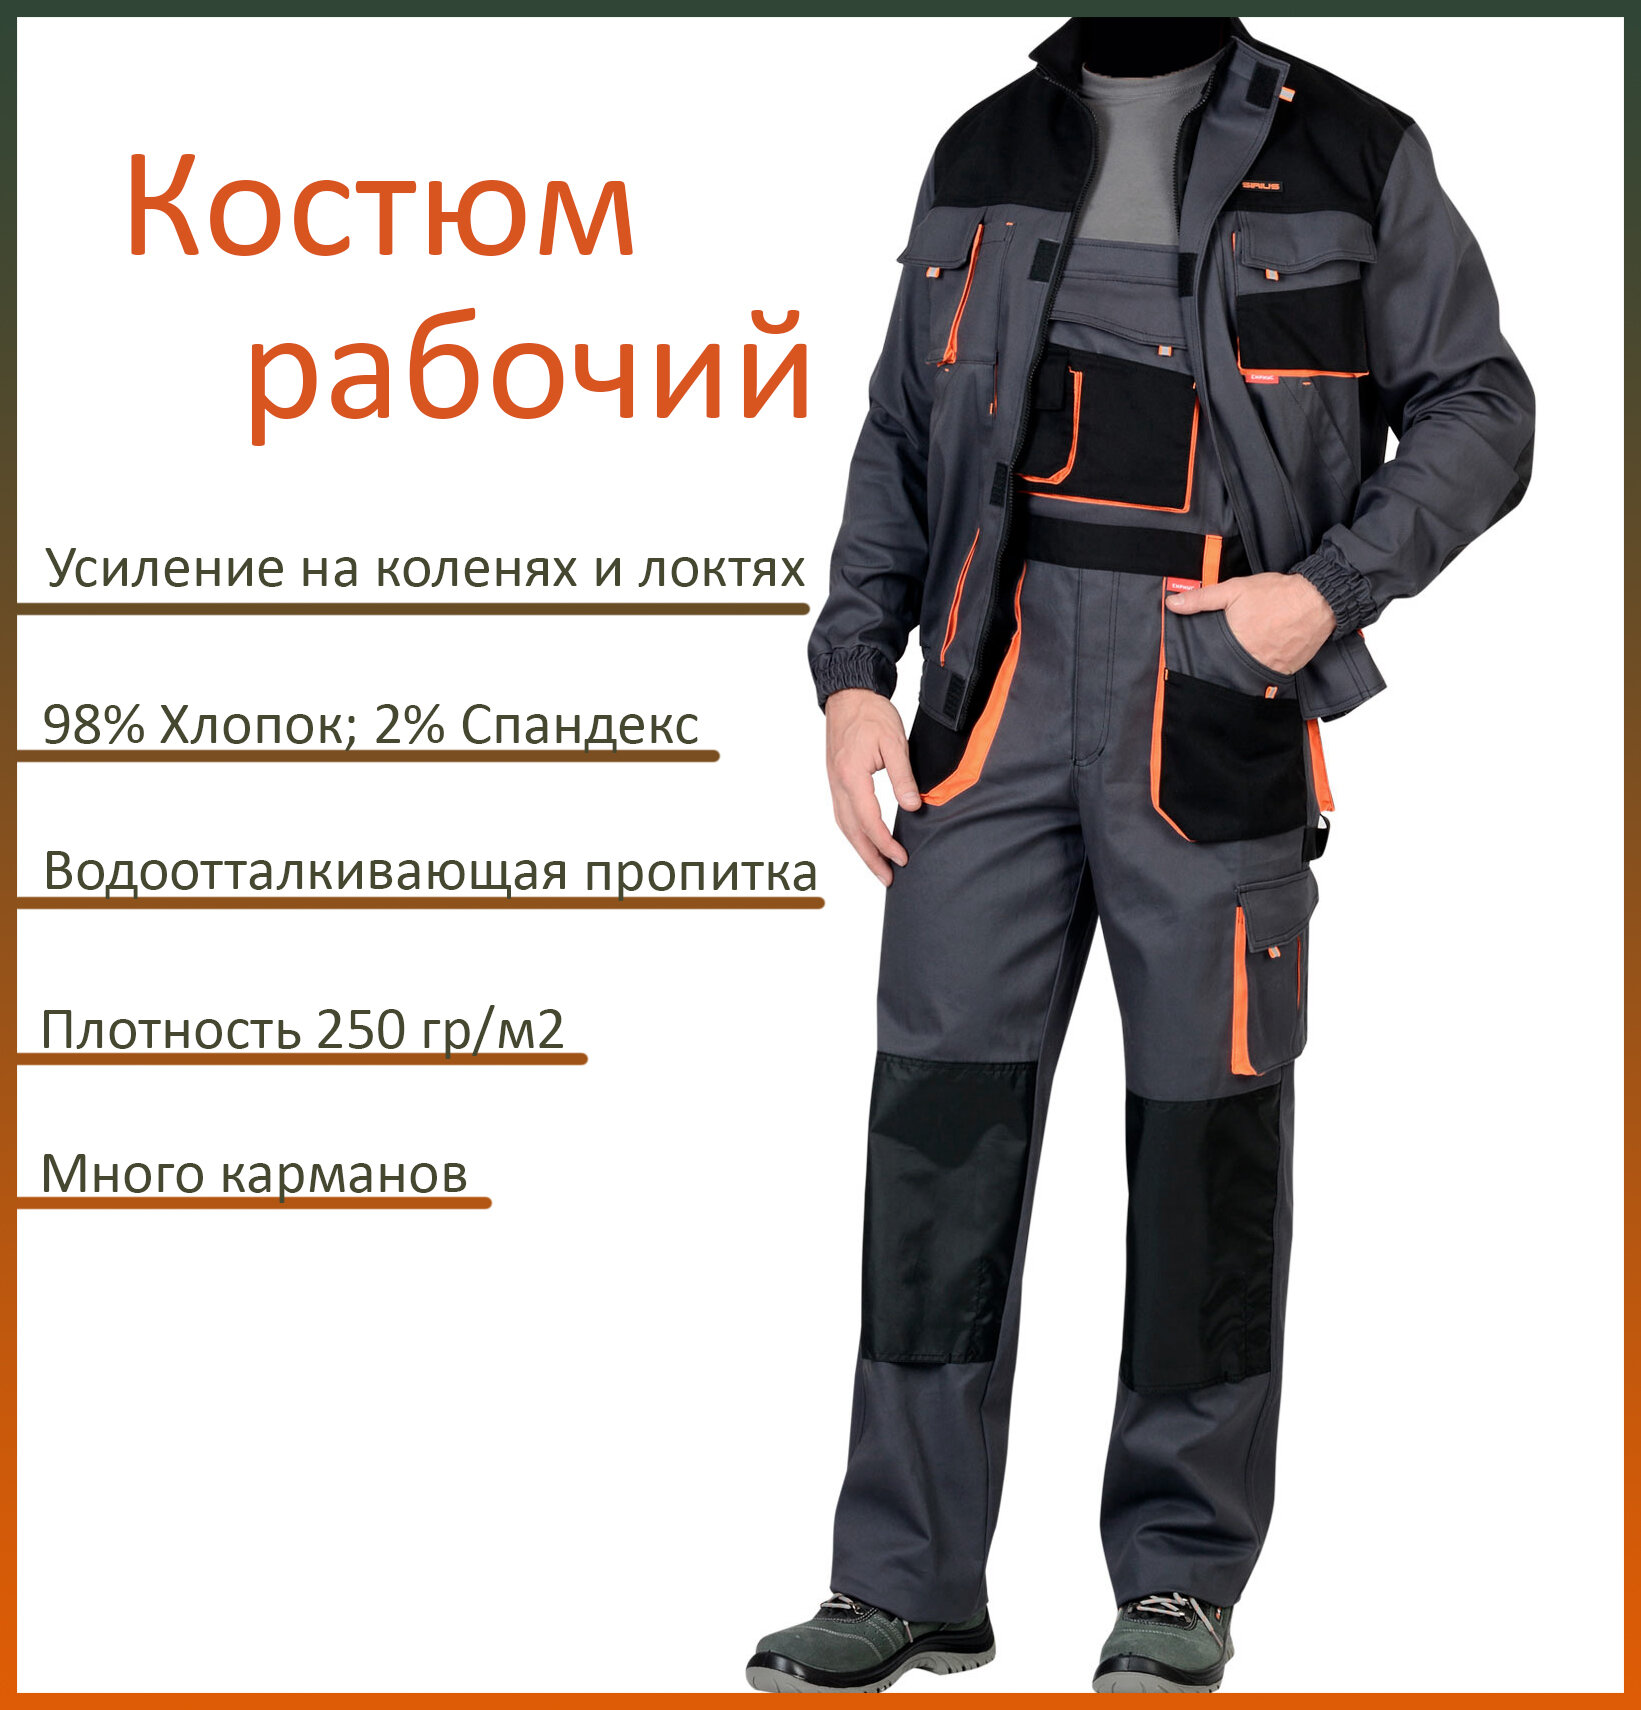 Костюм рабочий арт. 13028/ куртка + полукомбинезон/ серый с оранжевым/ 48-50 рост 170-176